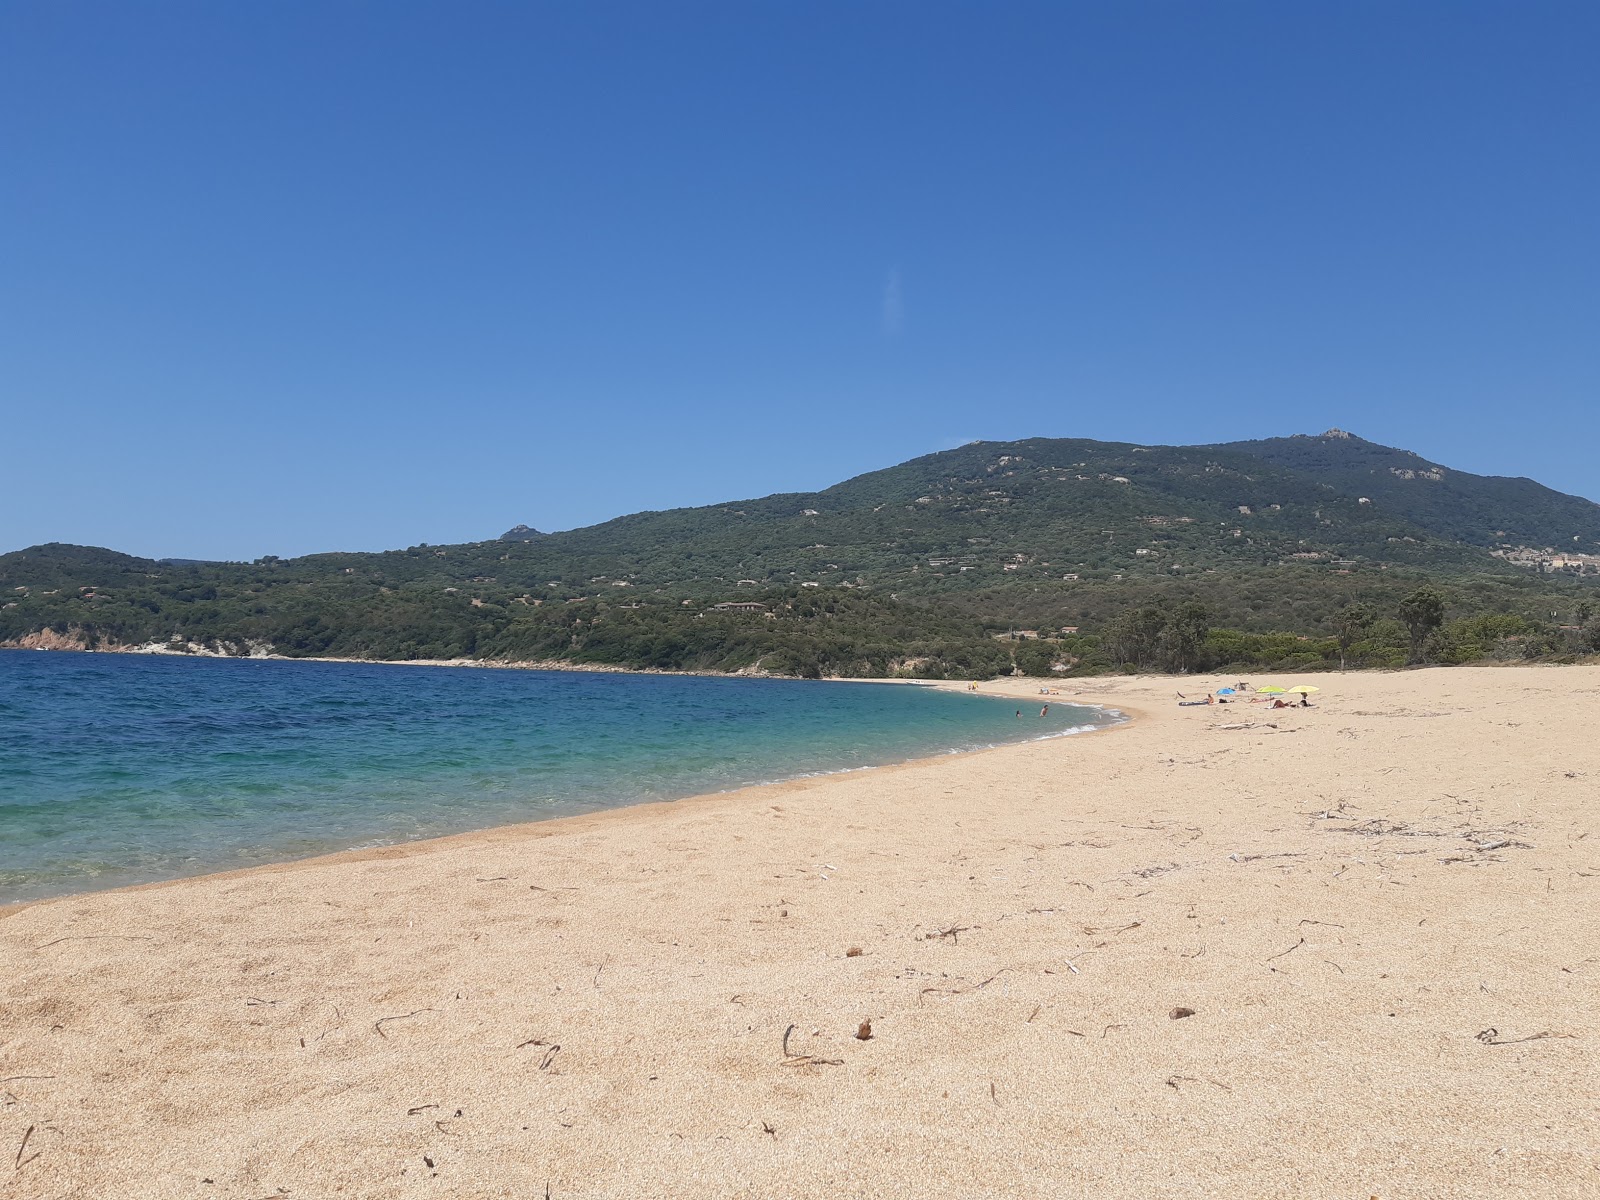 Zdjęcie Baraci beach z przestronna zatoka